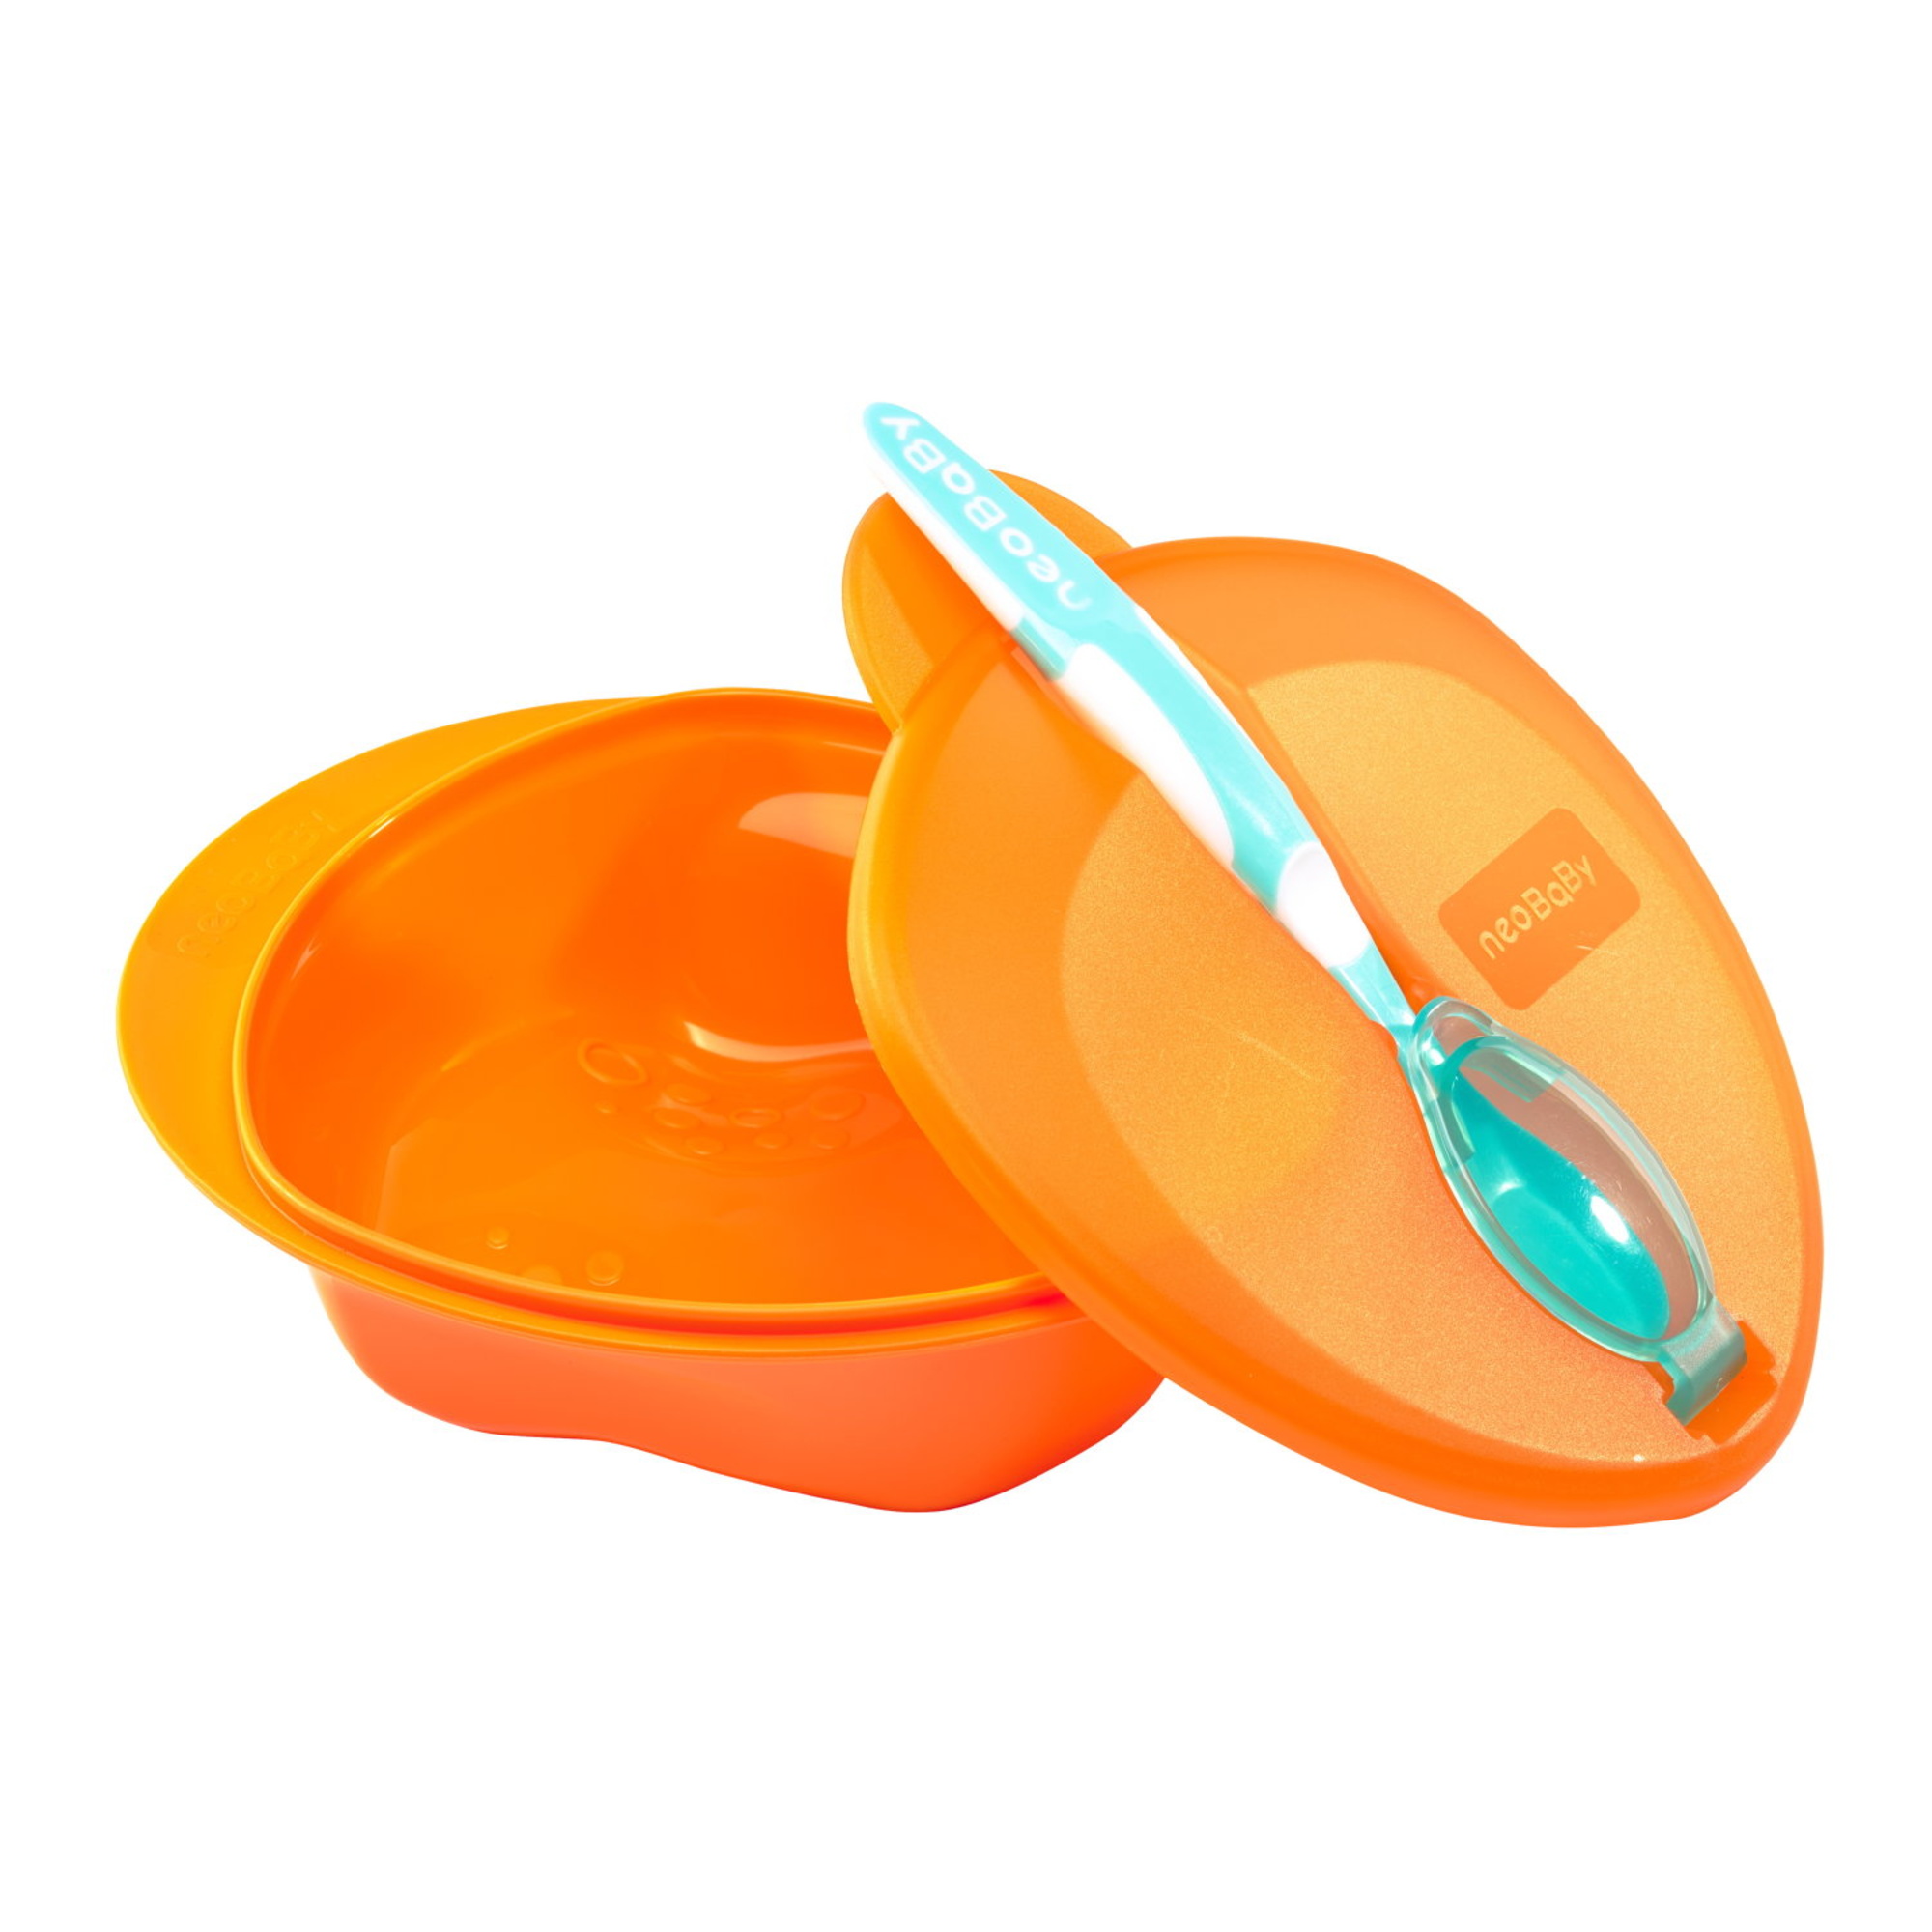 Neobaby  set pappa con cucchiaio 6m + - colori assortiti - - NEO BABY